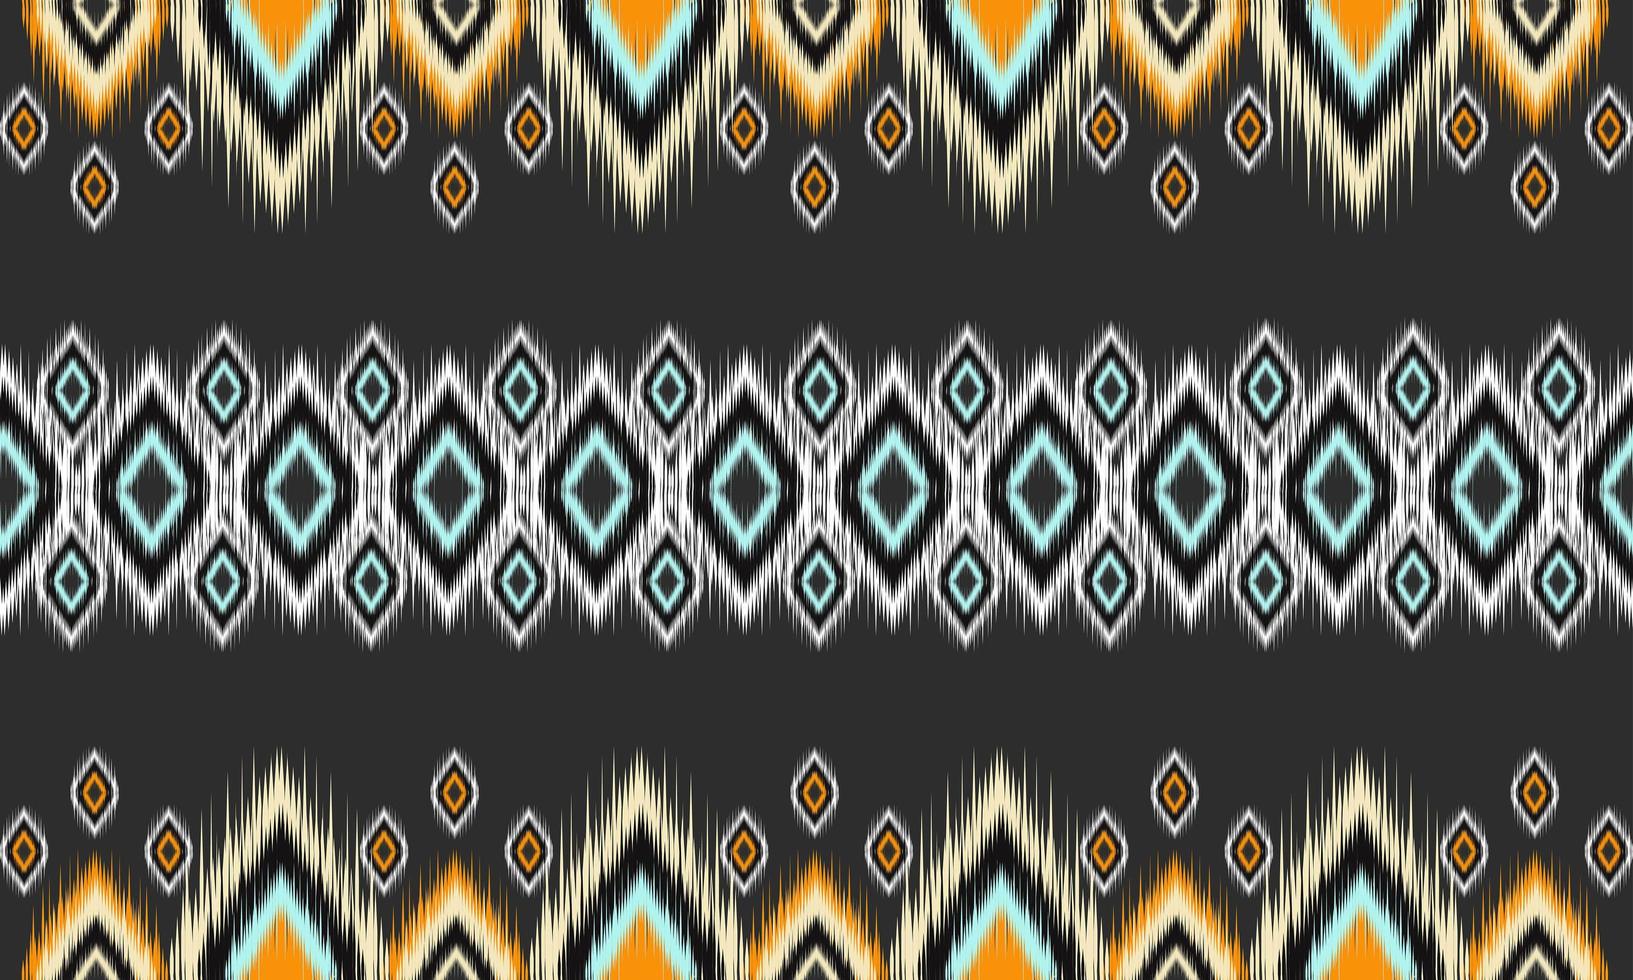 geometrisk etnisk orientalisk ikat mönster traditionell design för bakgrund, matta, tapeter, kläder, inslagning, batik, tyg, vektor illustration.broderi stil.